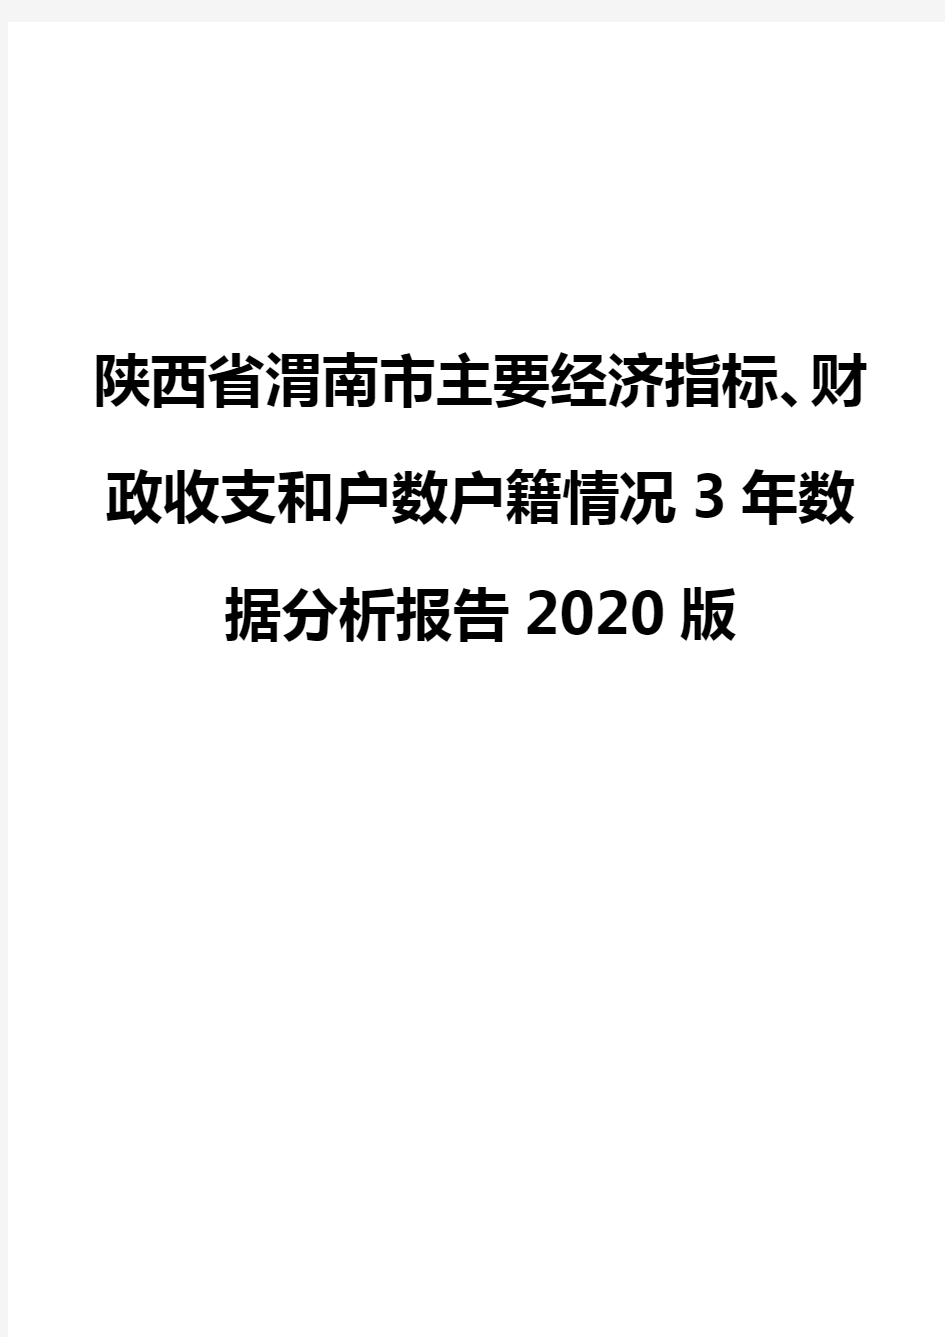 陕西省渭南市主要经济指标、财政收支和户数户籍情况3年数据分析报告2020版